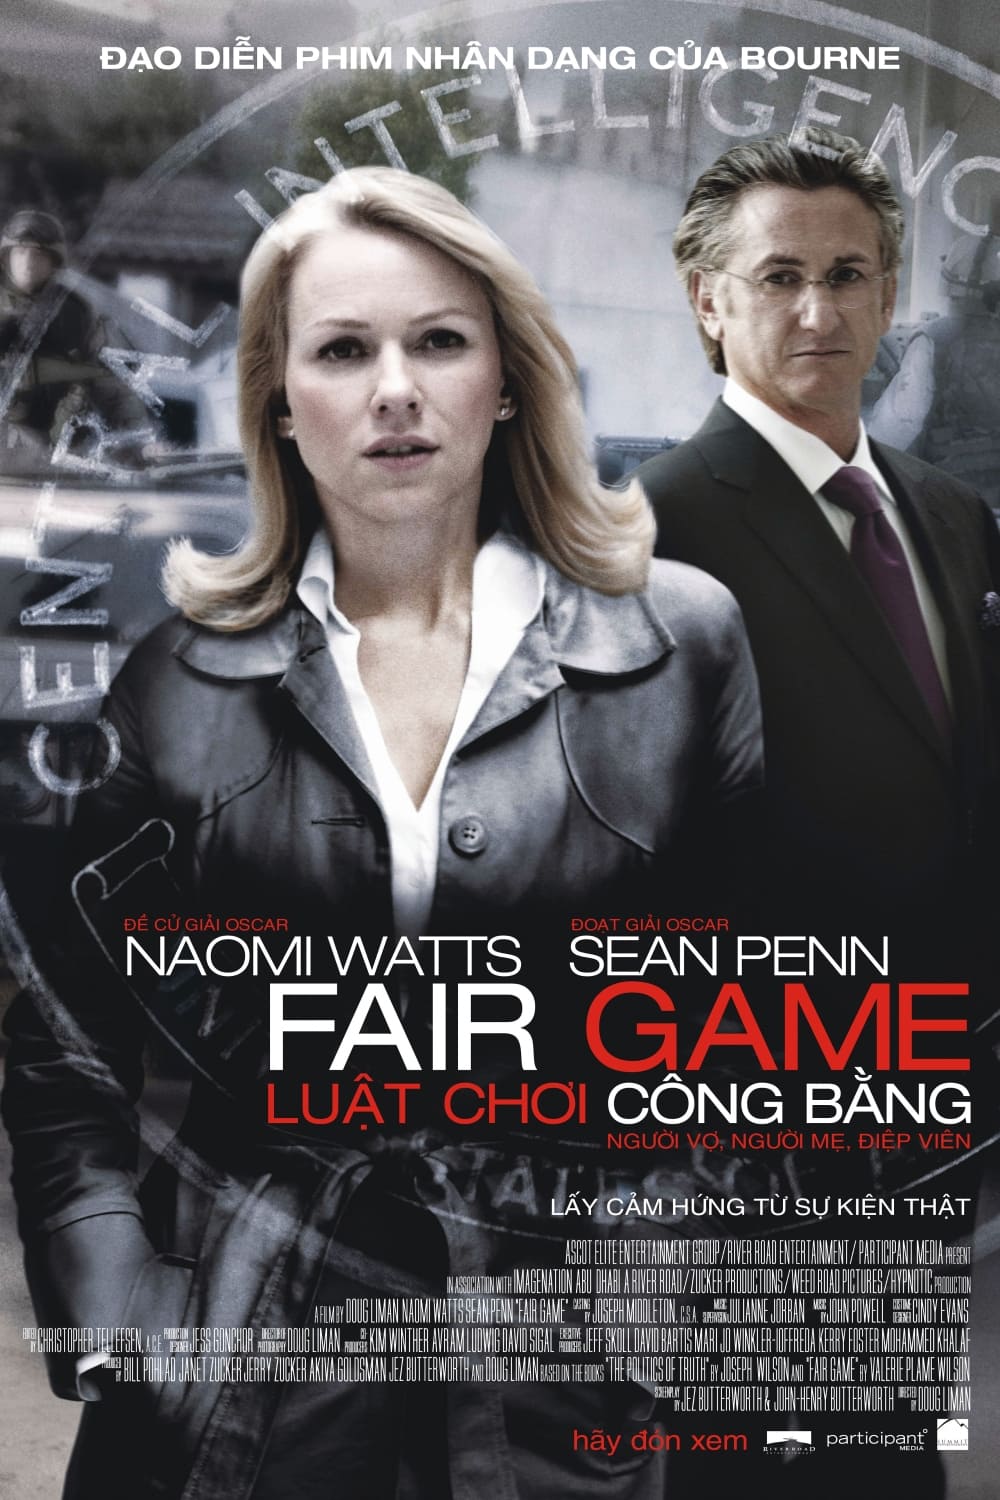 Luật Chơi Công Bằng (Fair Game) [2010]